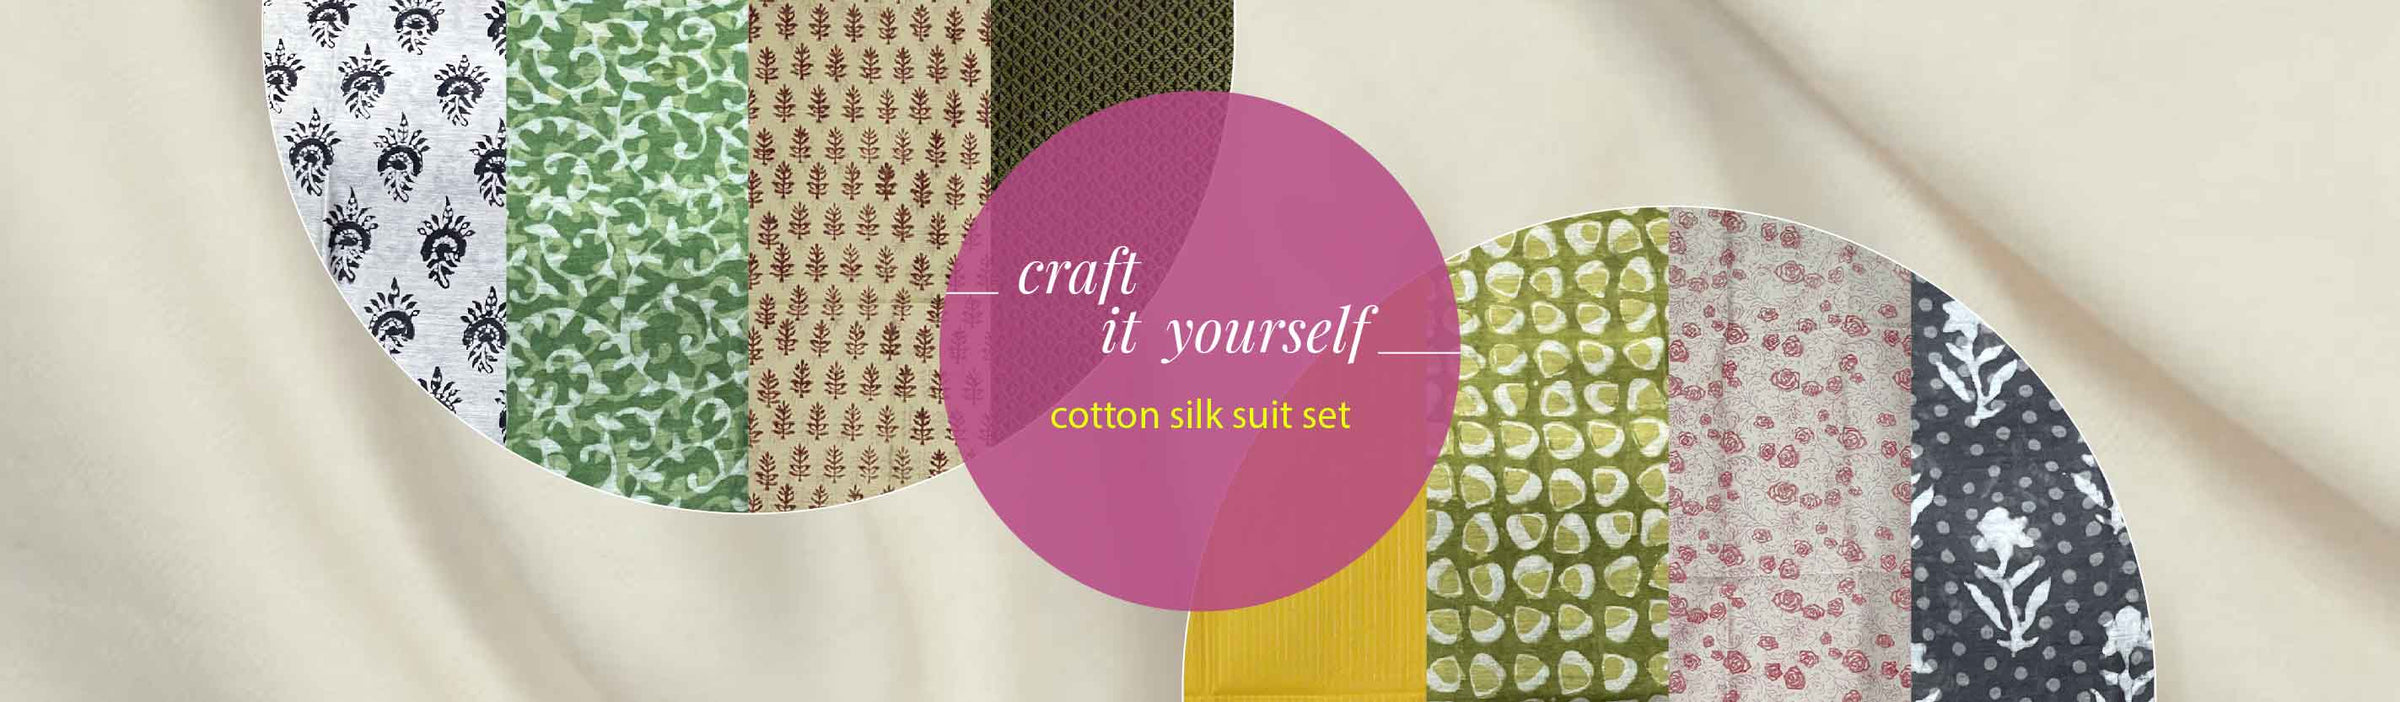 Cotton silk suit set